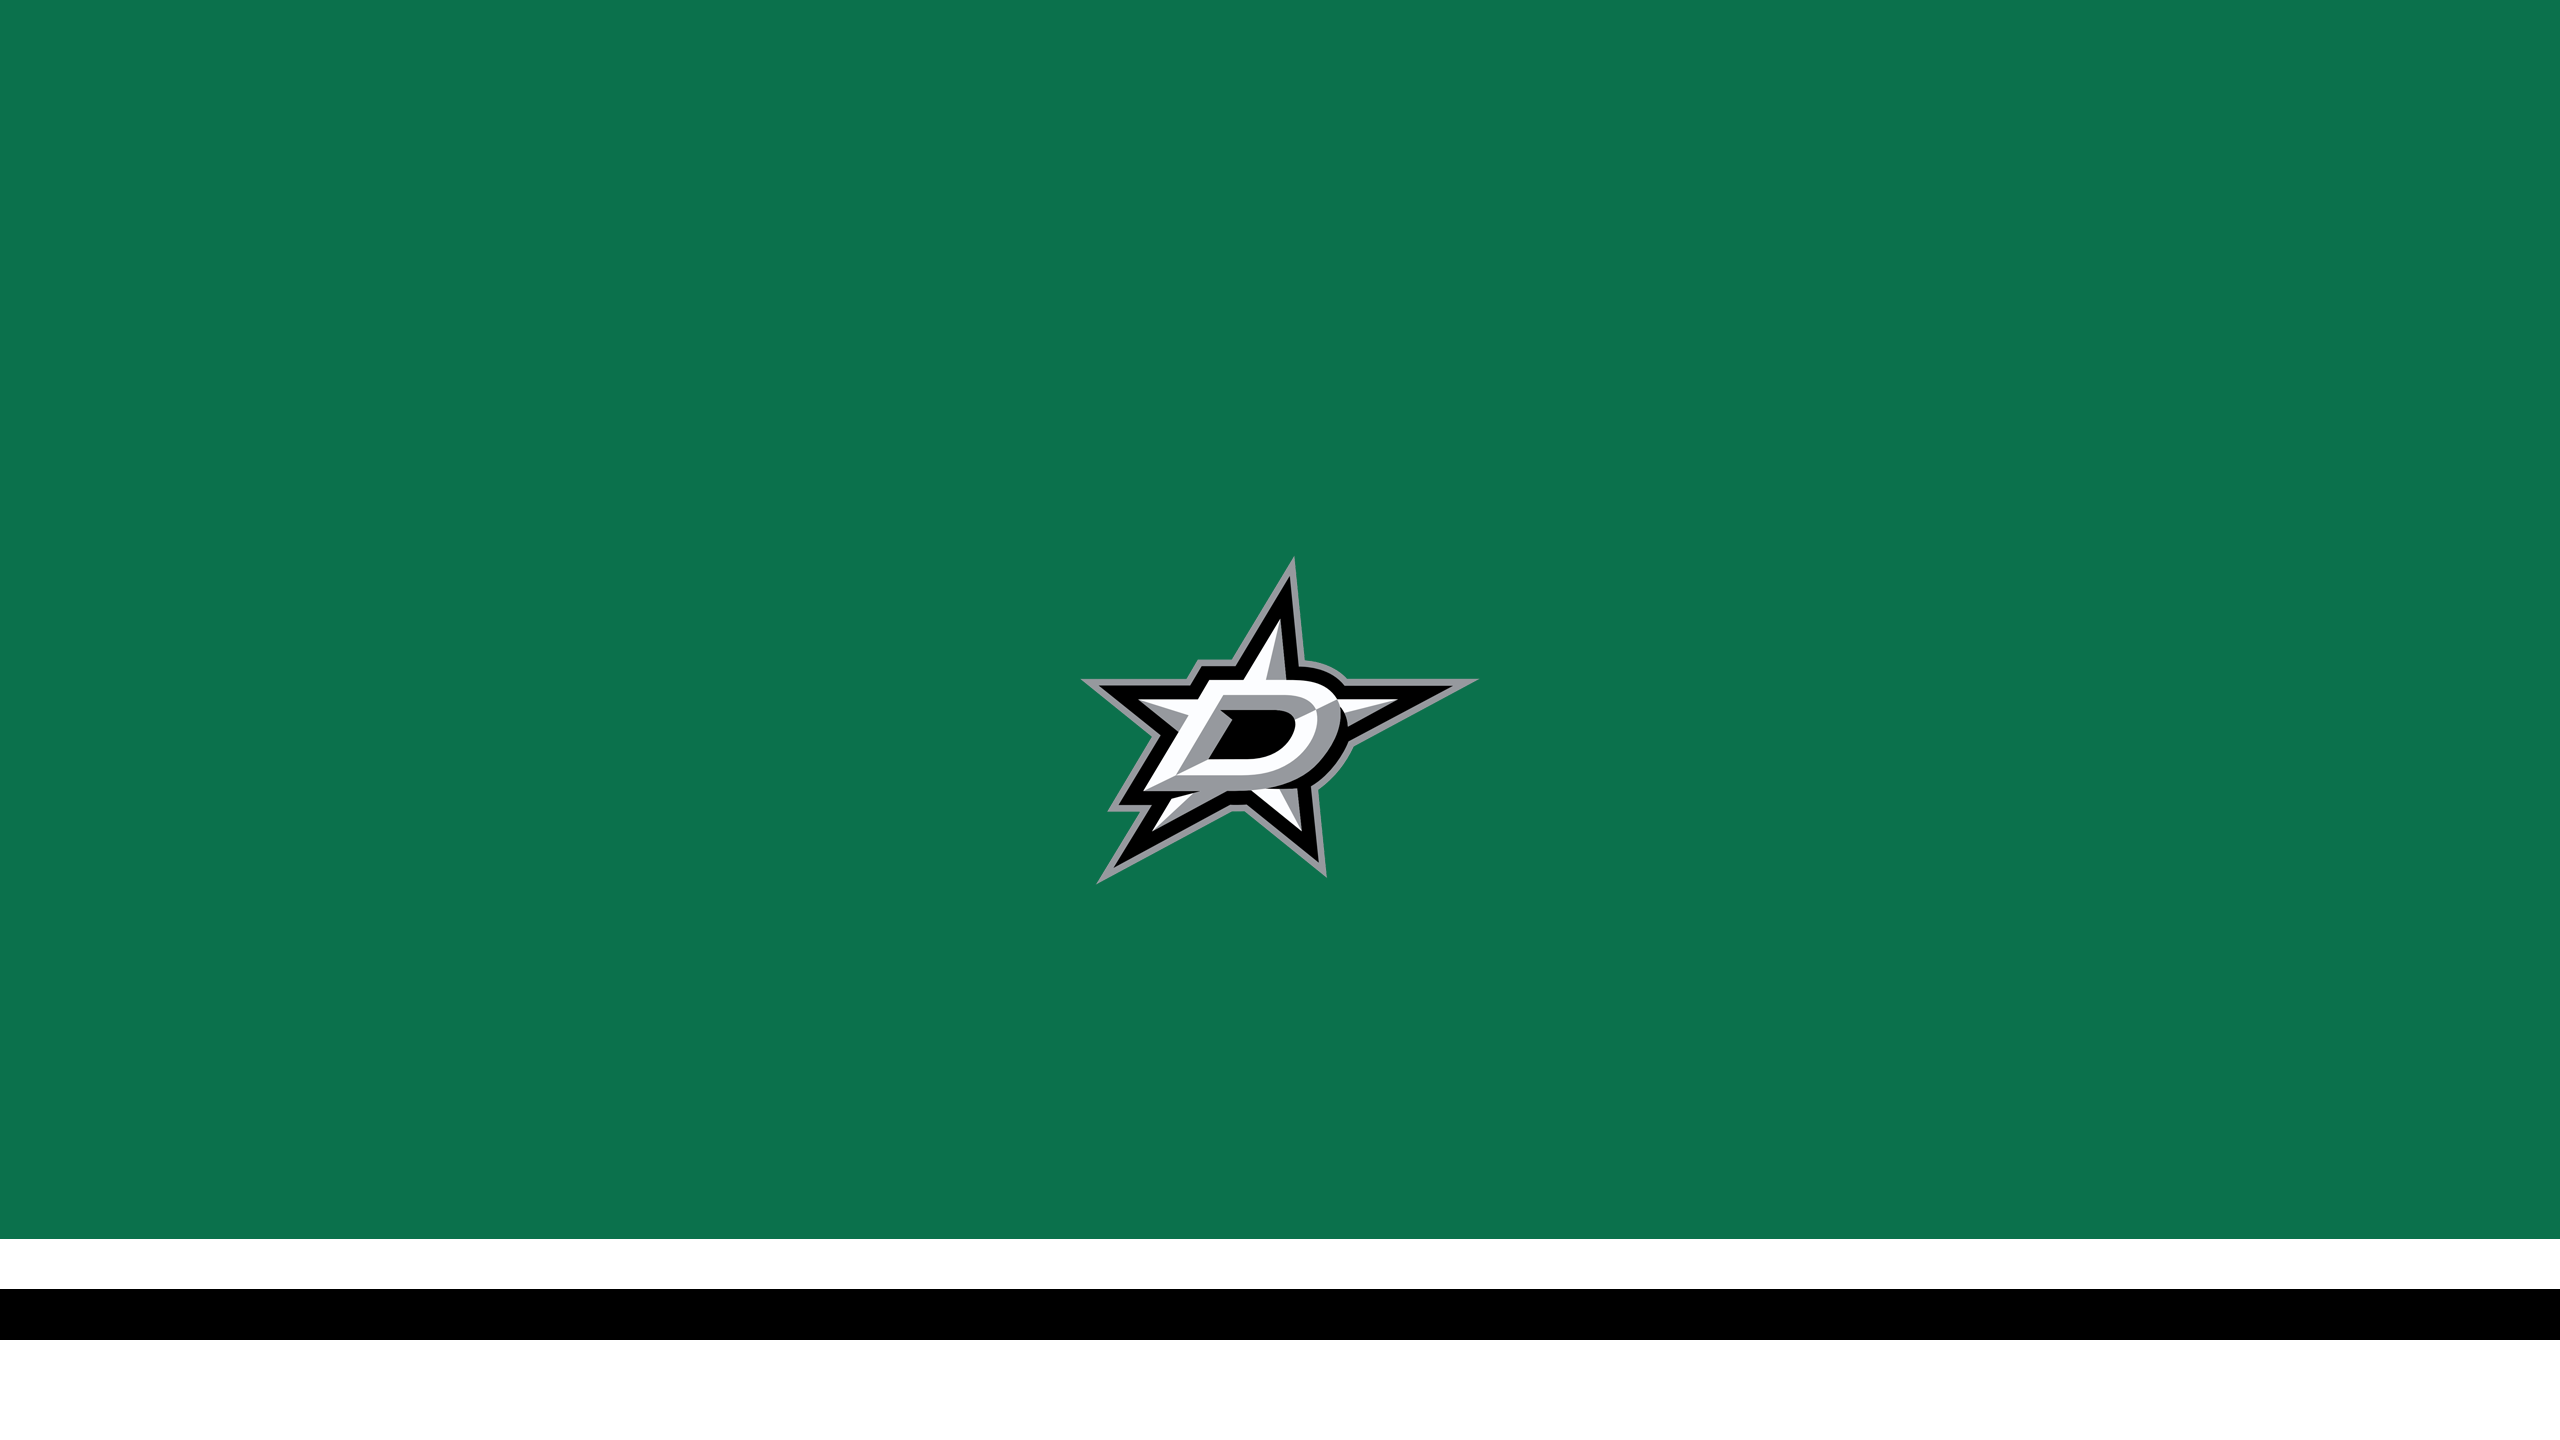 Dallas Stars - NHL - Square Bettor